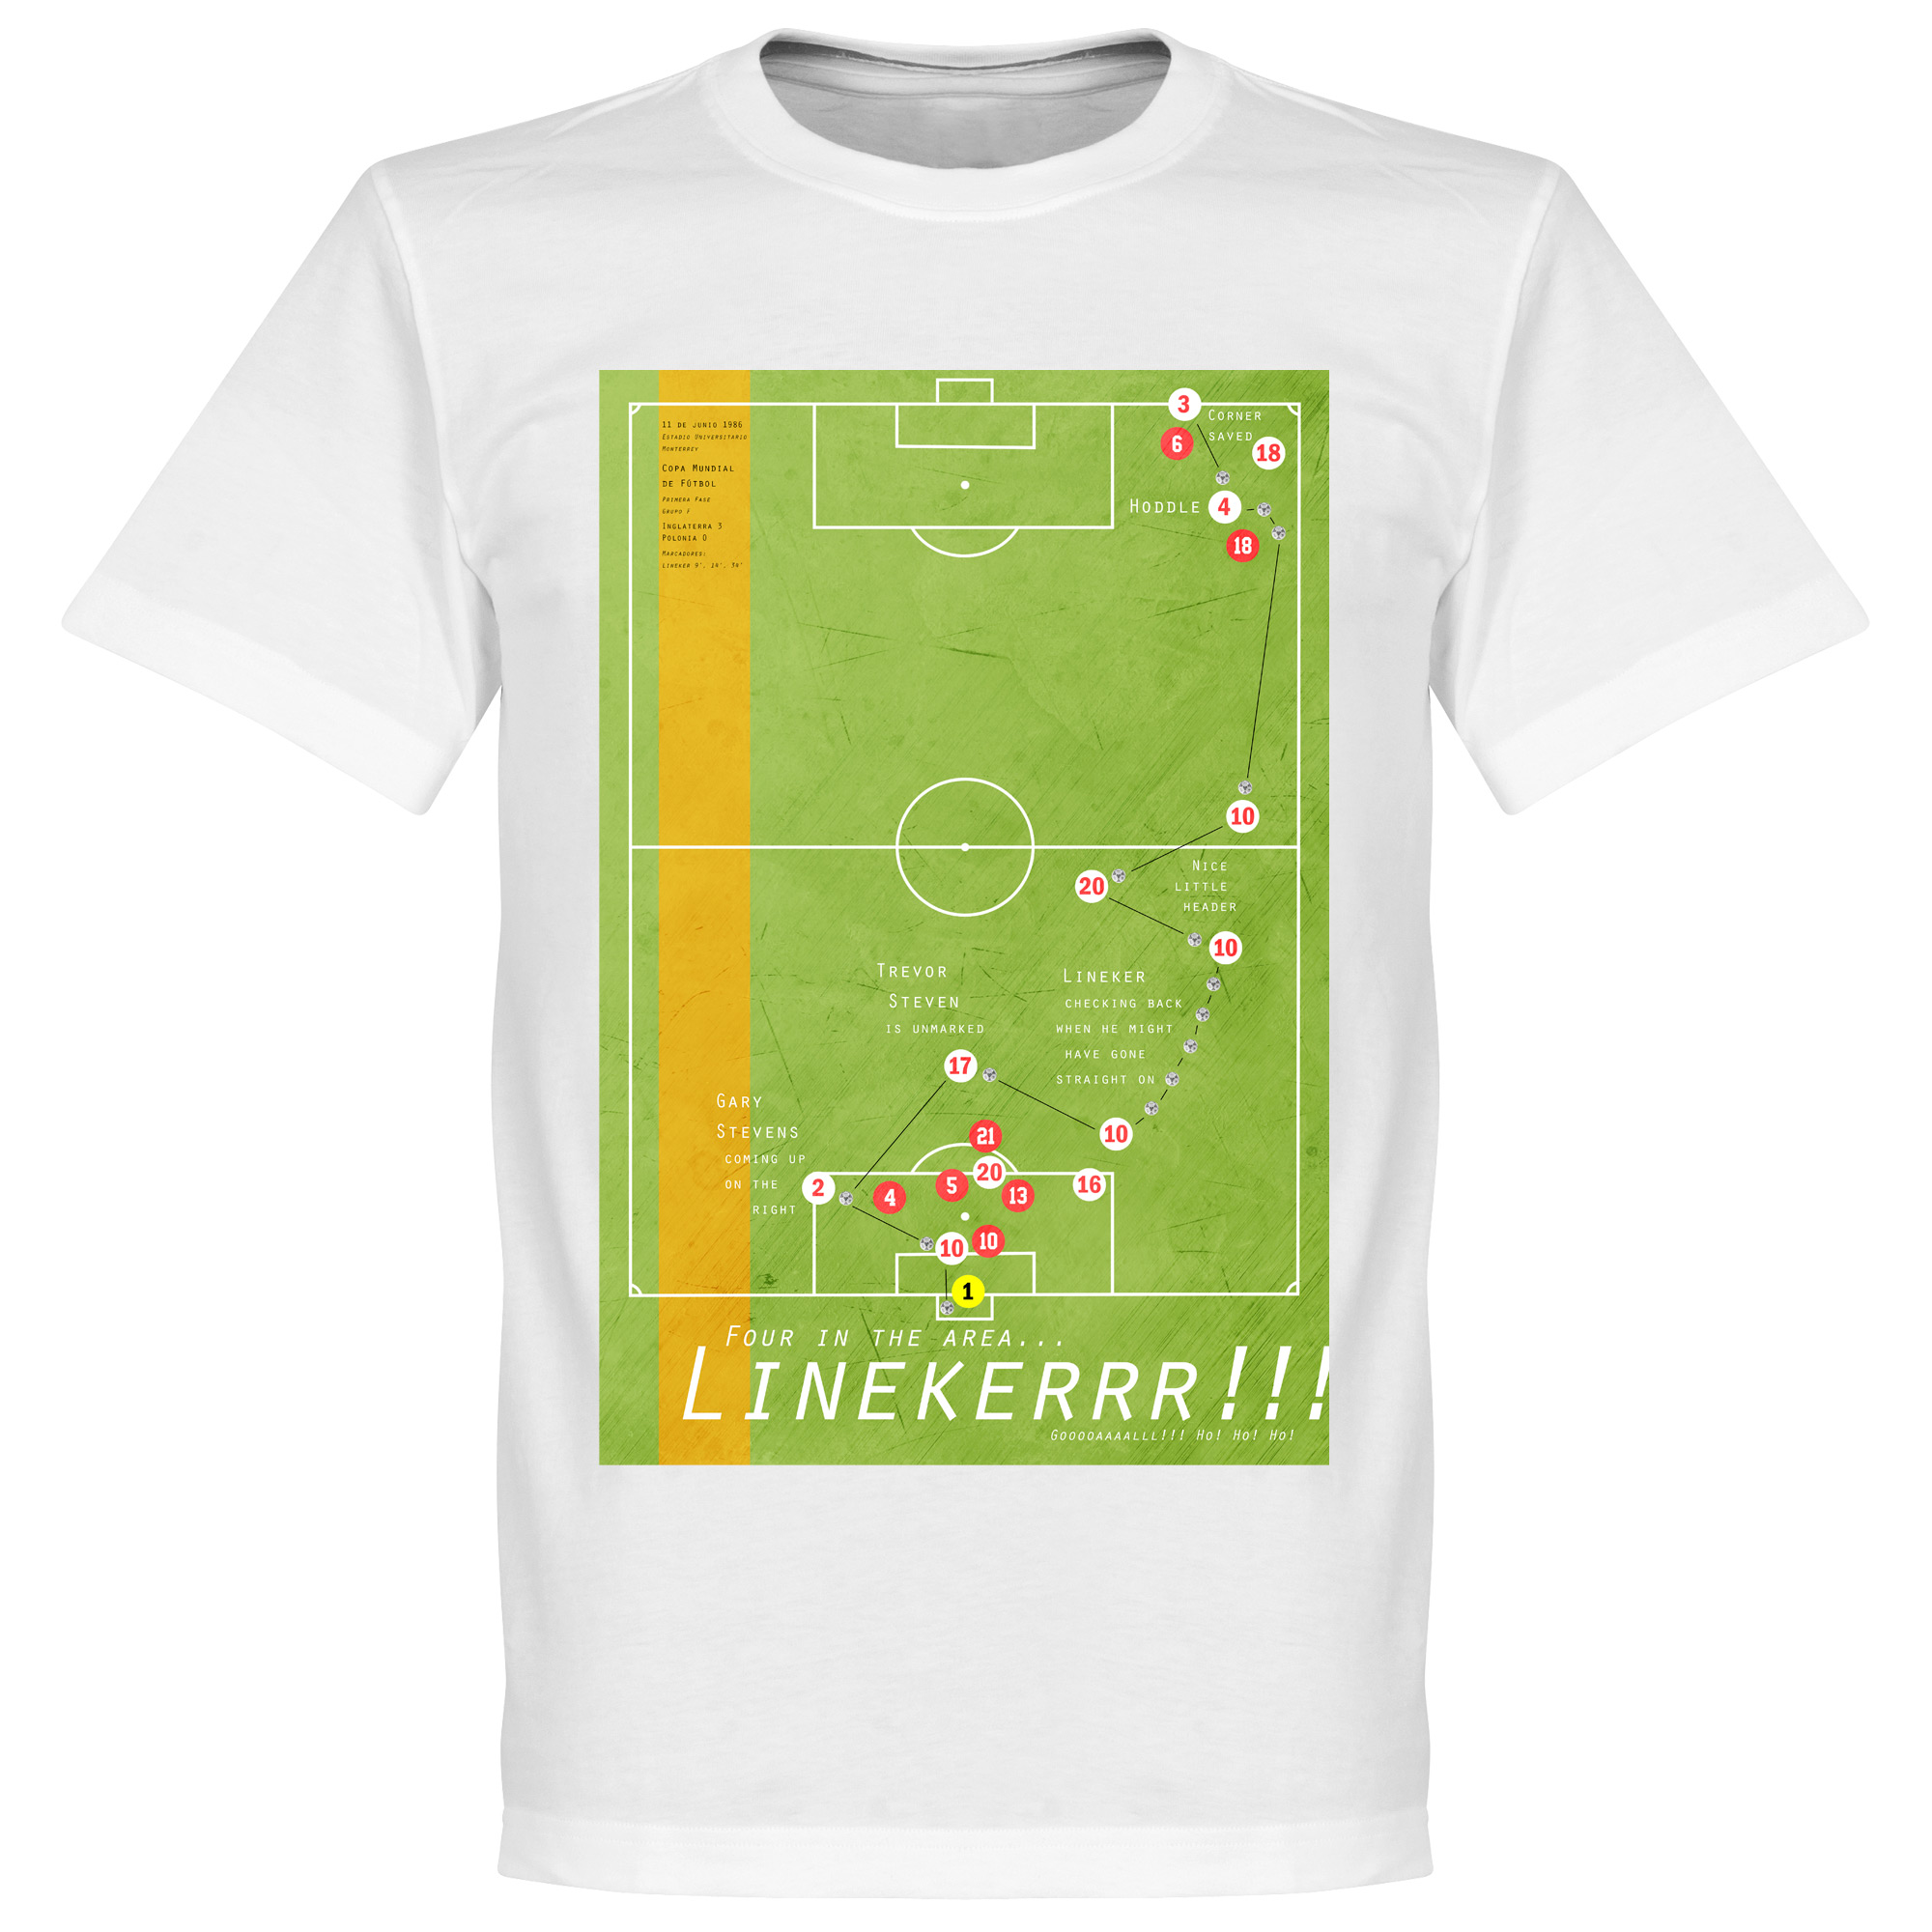 Pennarello Gary Lineker 1986 Classic Goal T-Shirt - XL